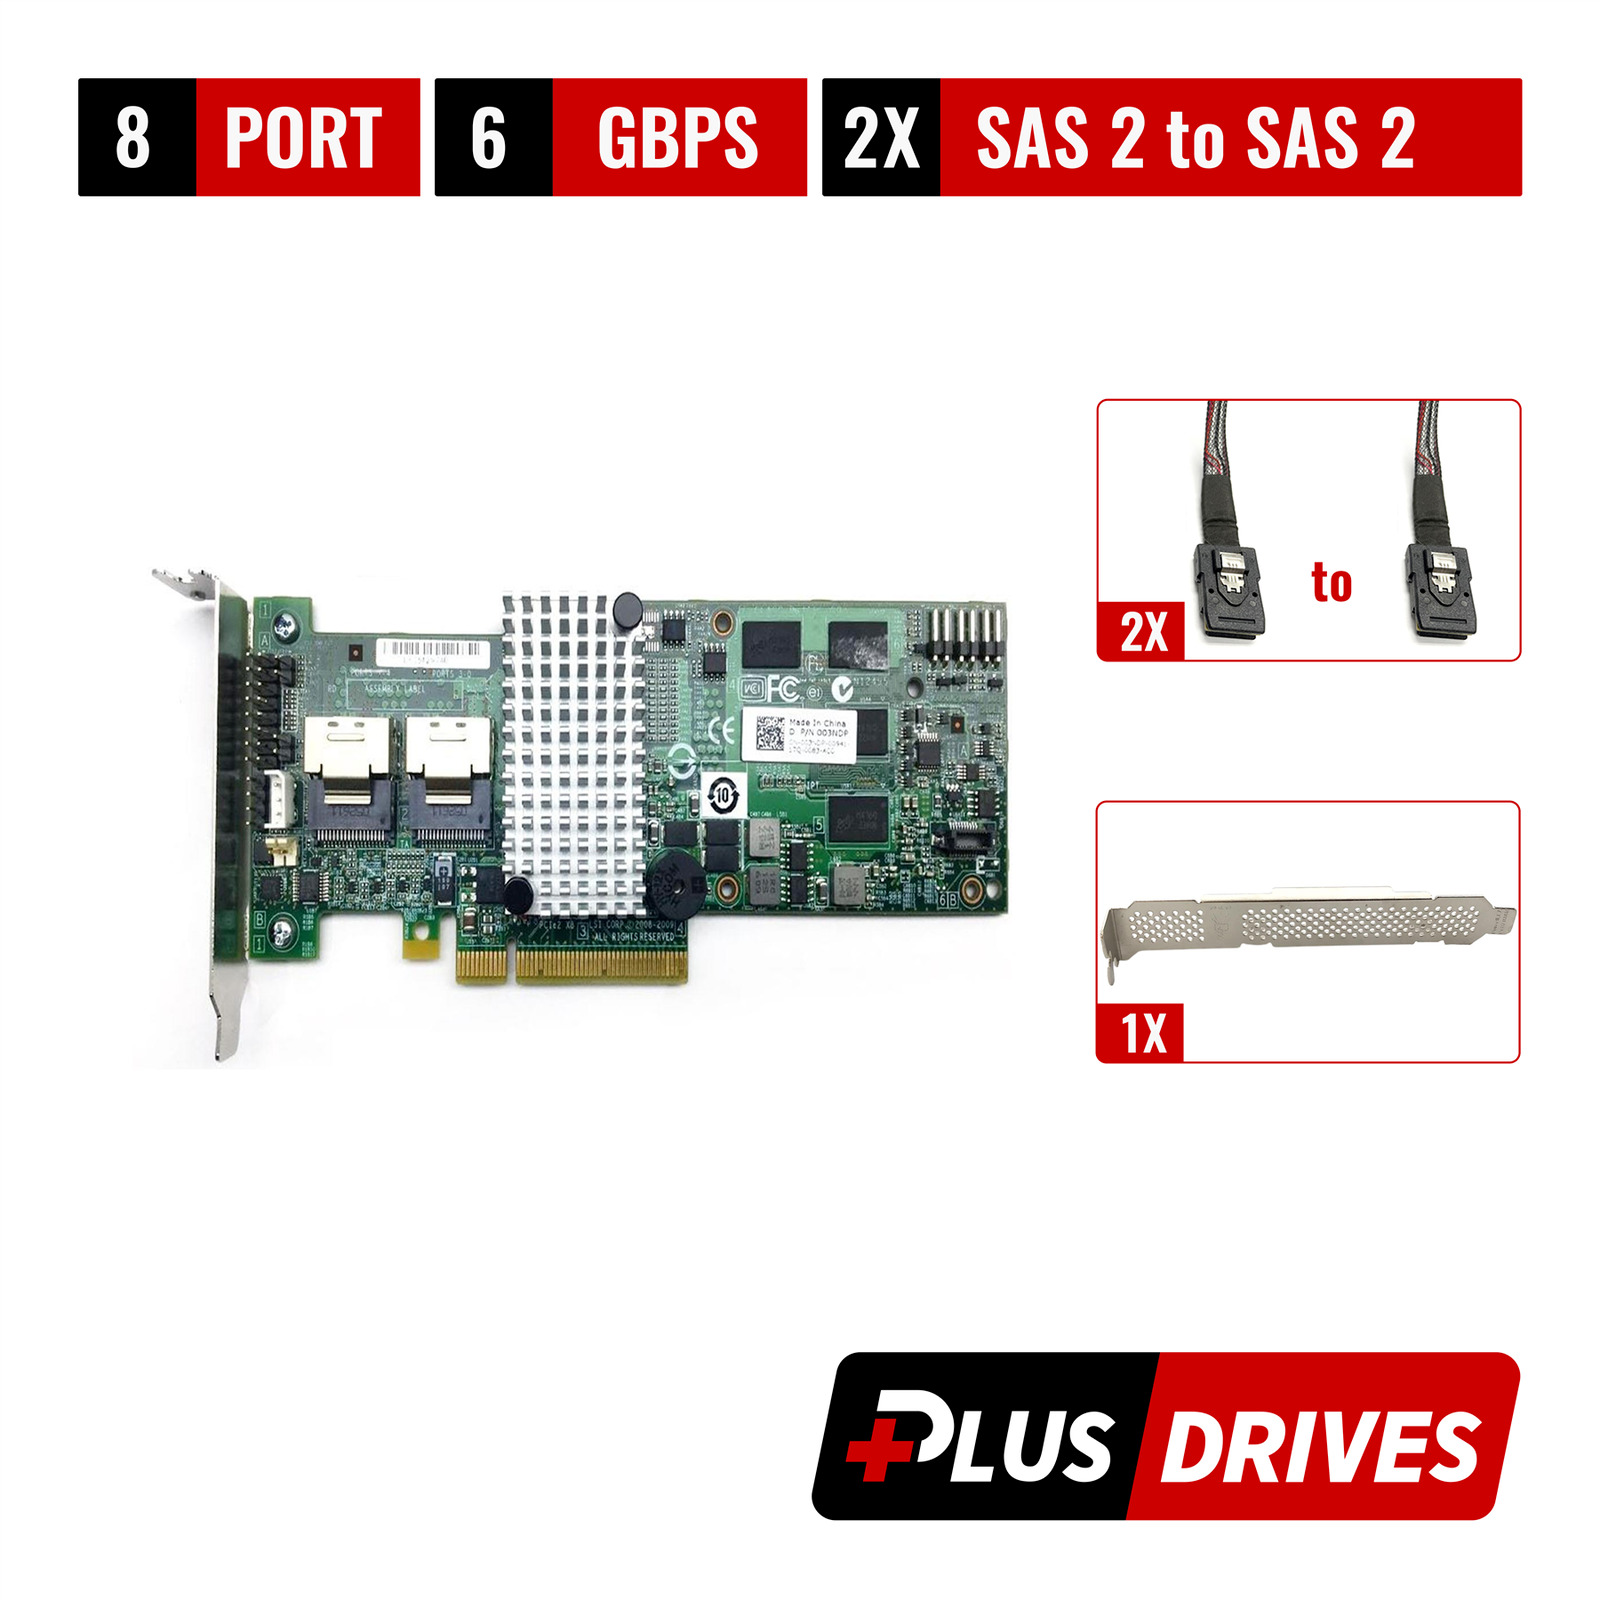 LSI 9260-8i 8 Port 6Gbps SAS/SATA PCIe 2.0 RAID Card w/ 2x SAS2 to SAS2 Cable